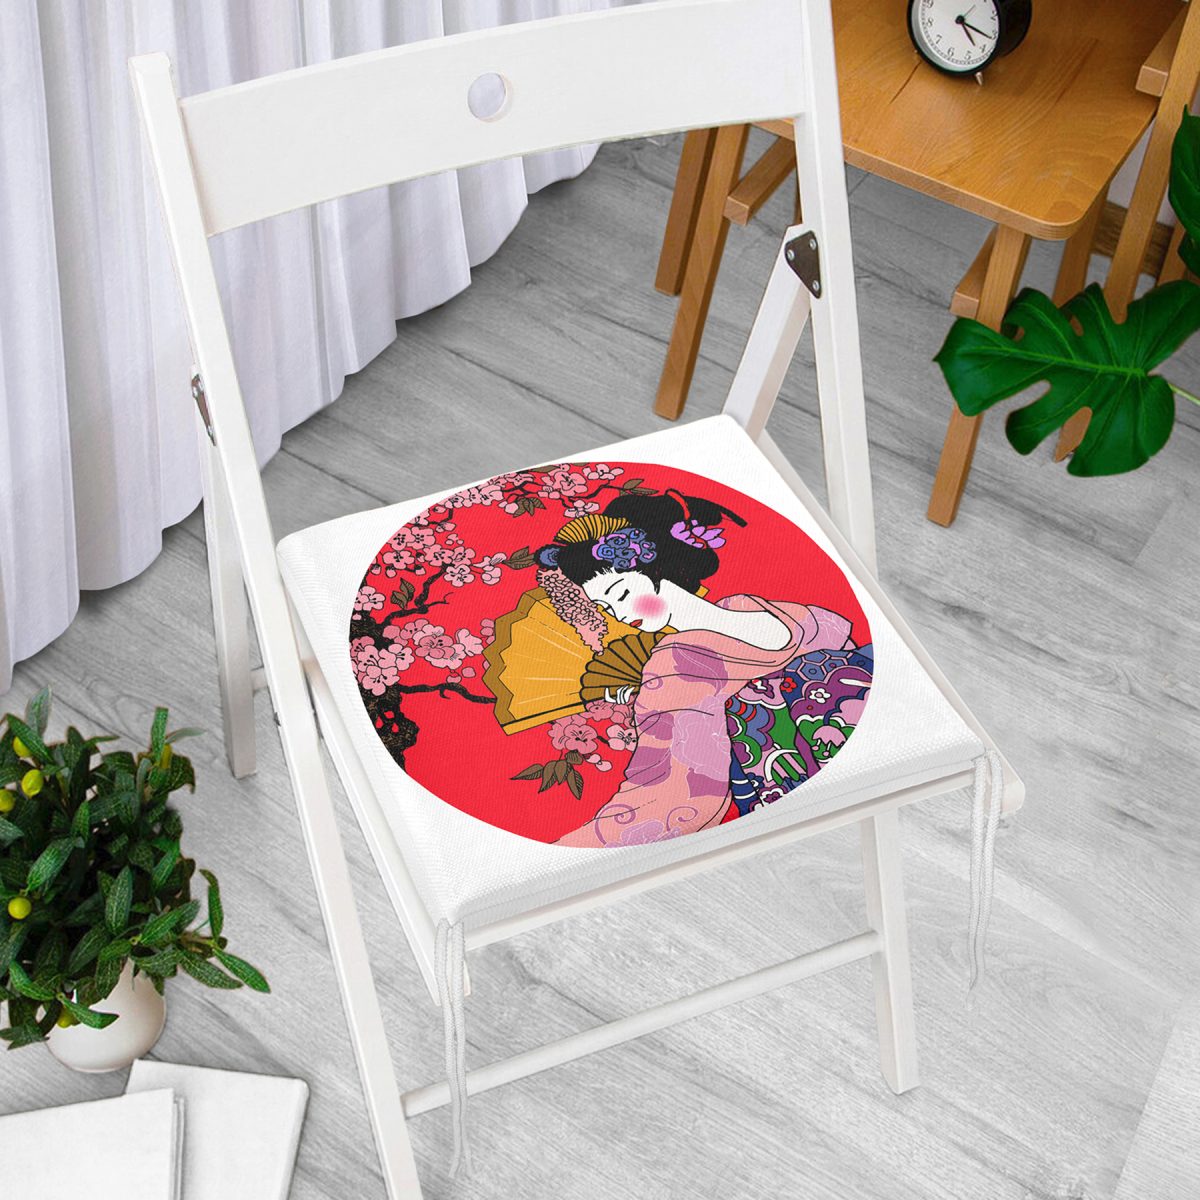 Çiçek Desenli Yelpazeli Japon Kız Motifli Modern Fermuarlı Sandalye Minderi Realhomes